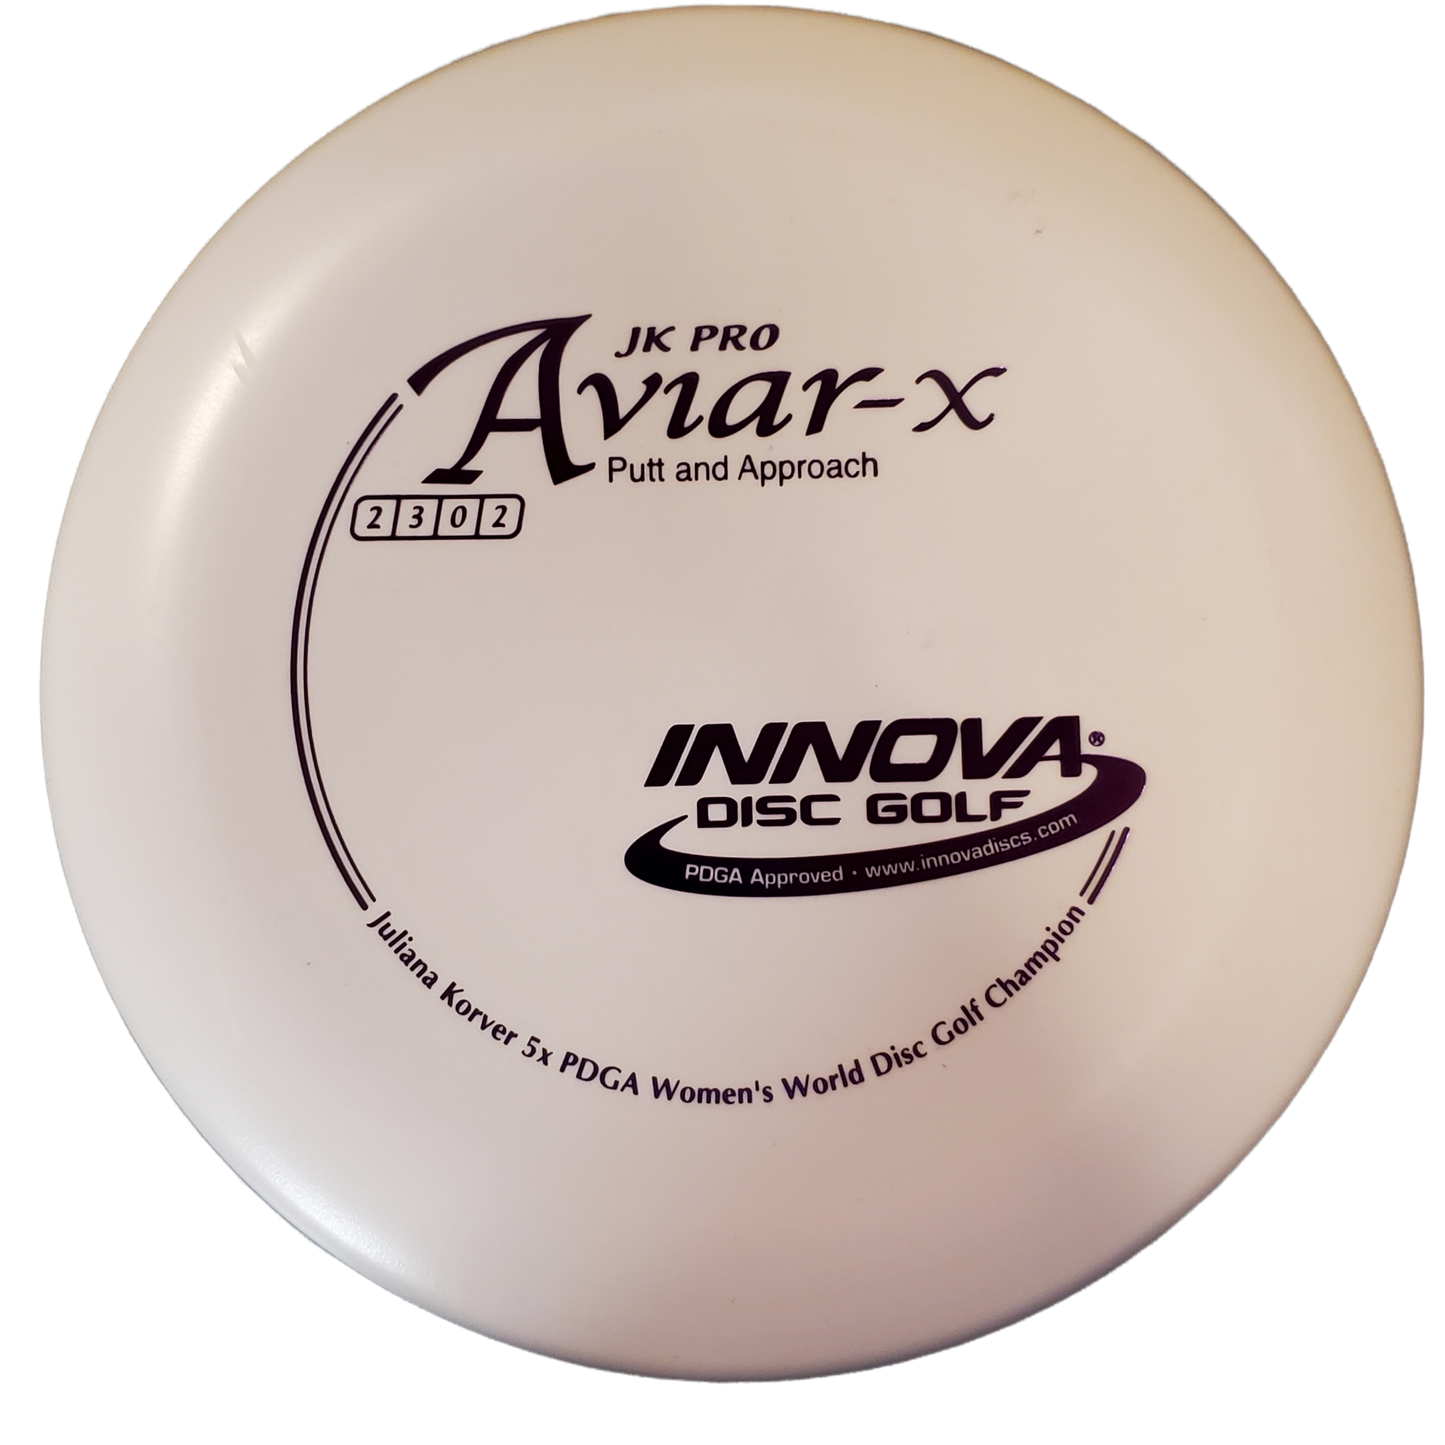 Innova JK Pro Axiar-X